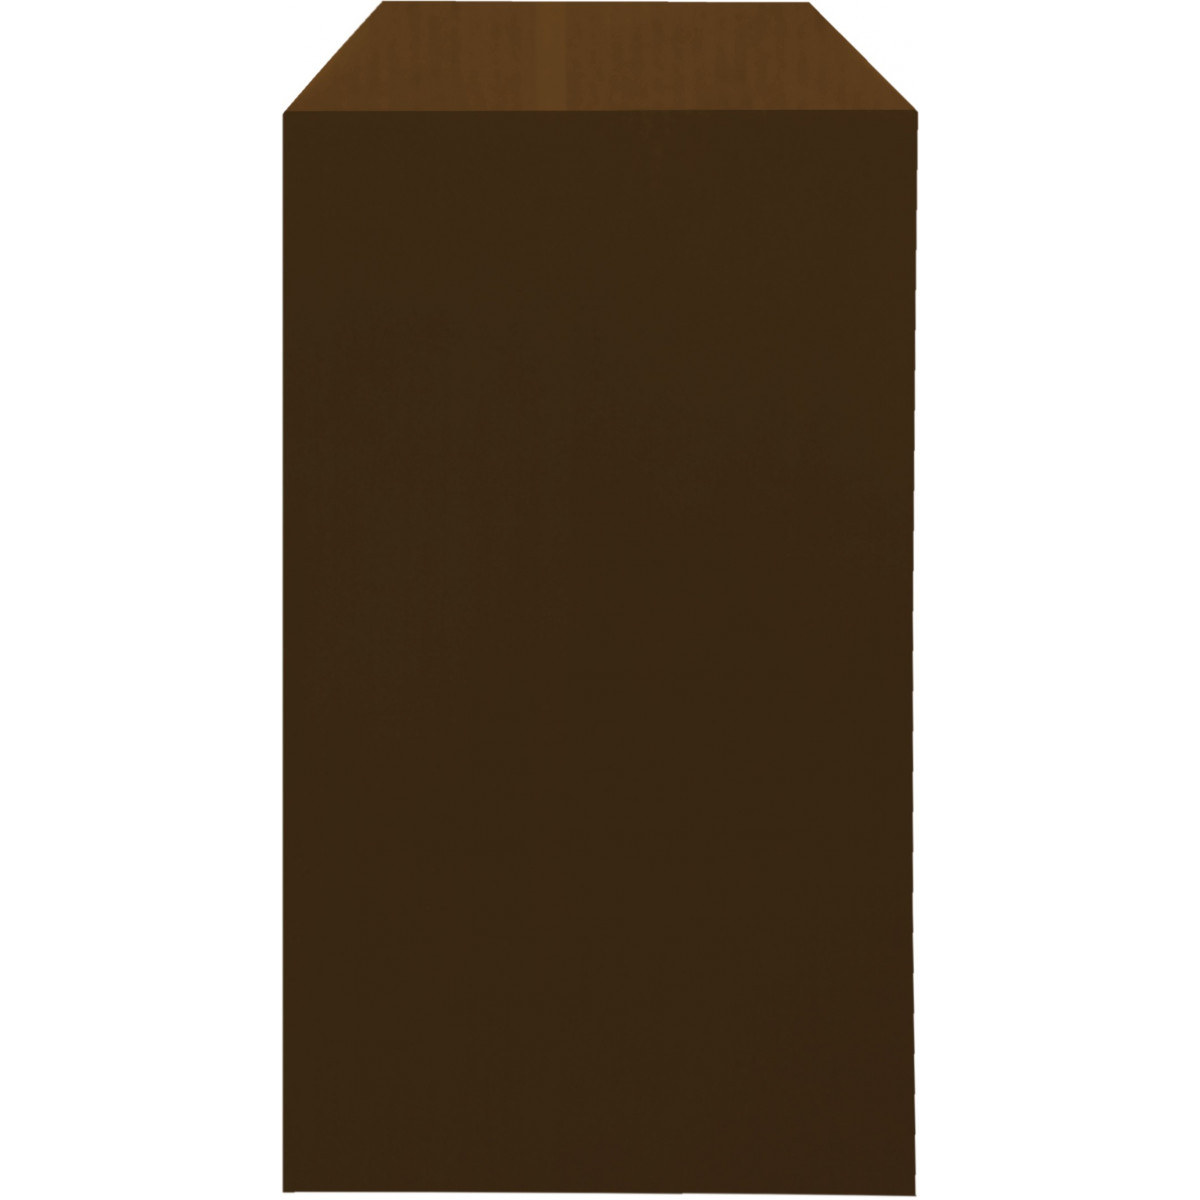 Sobre de papel kraft marrón chocolate